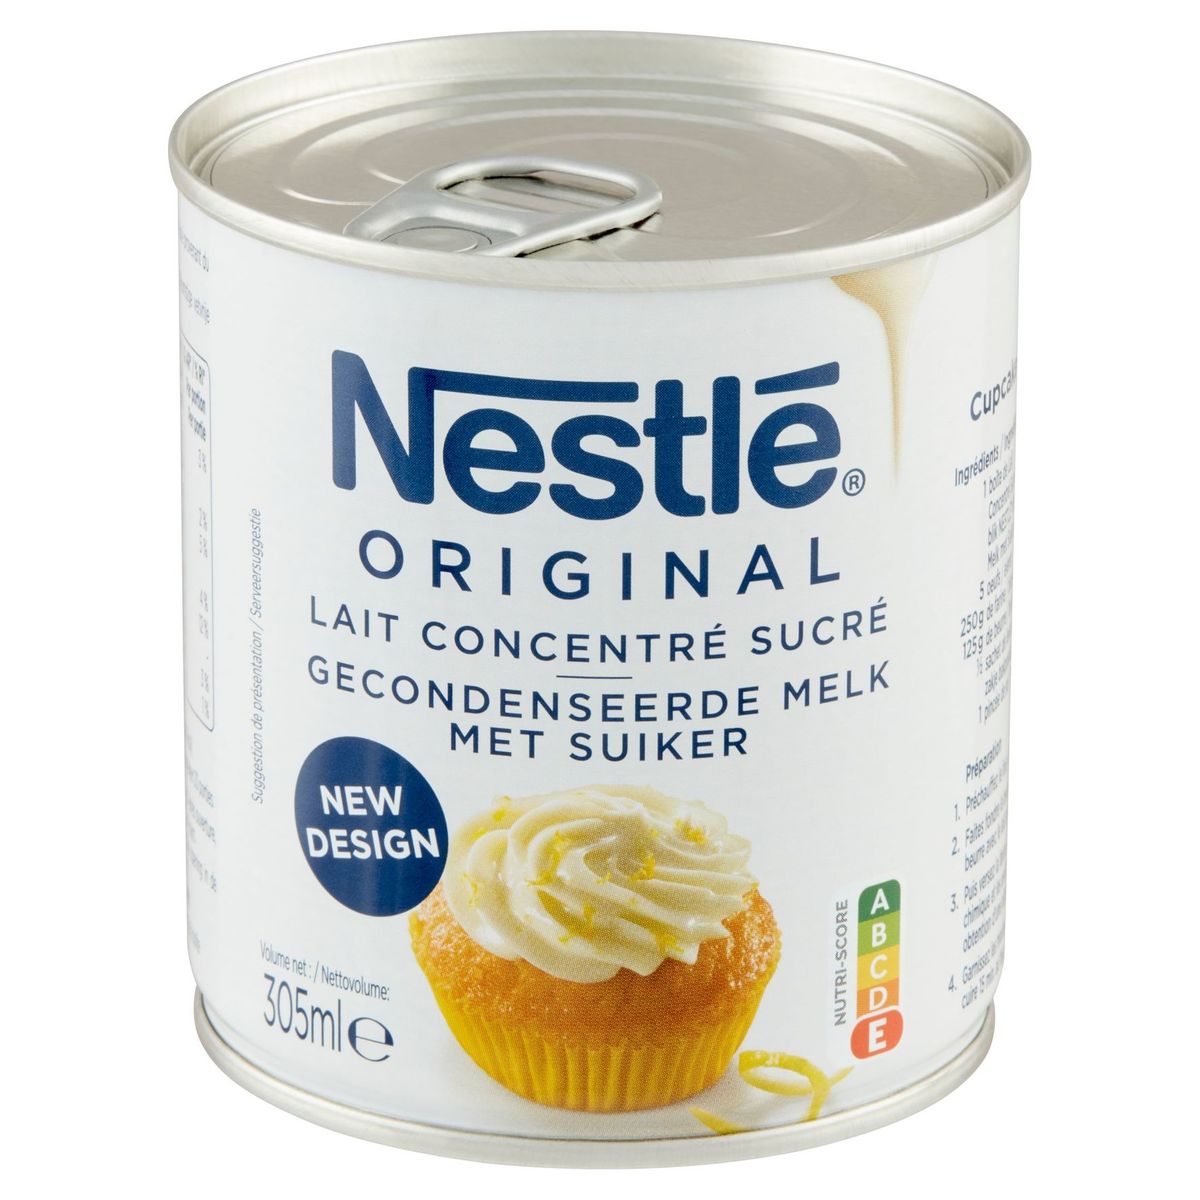 Nestlé Original Gecondenseerde Melk met Suiker 305 ml